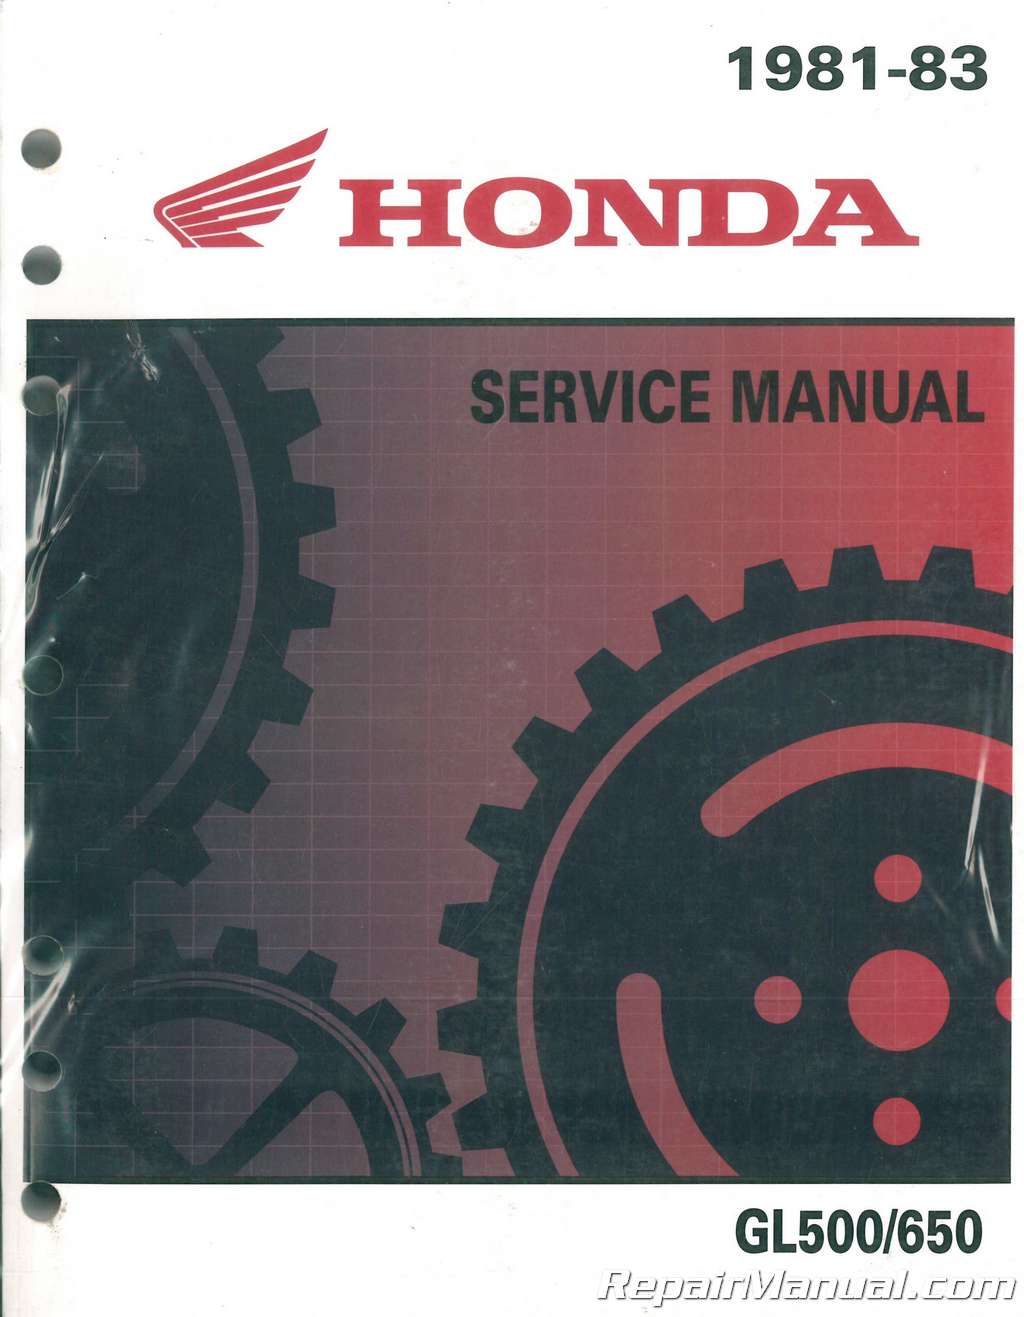 1983 Honda Silverwing Repair Manual